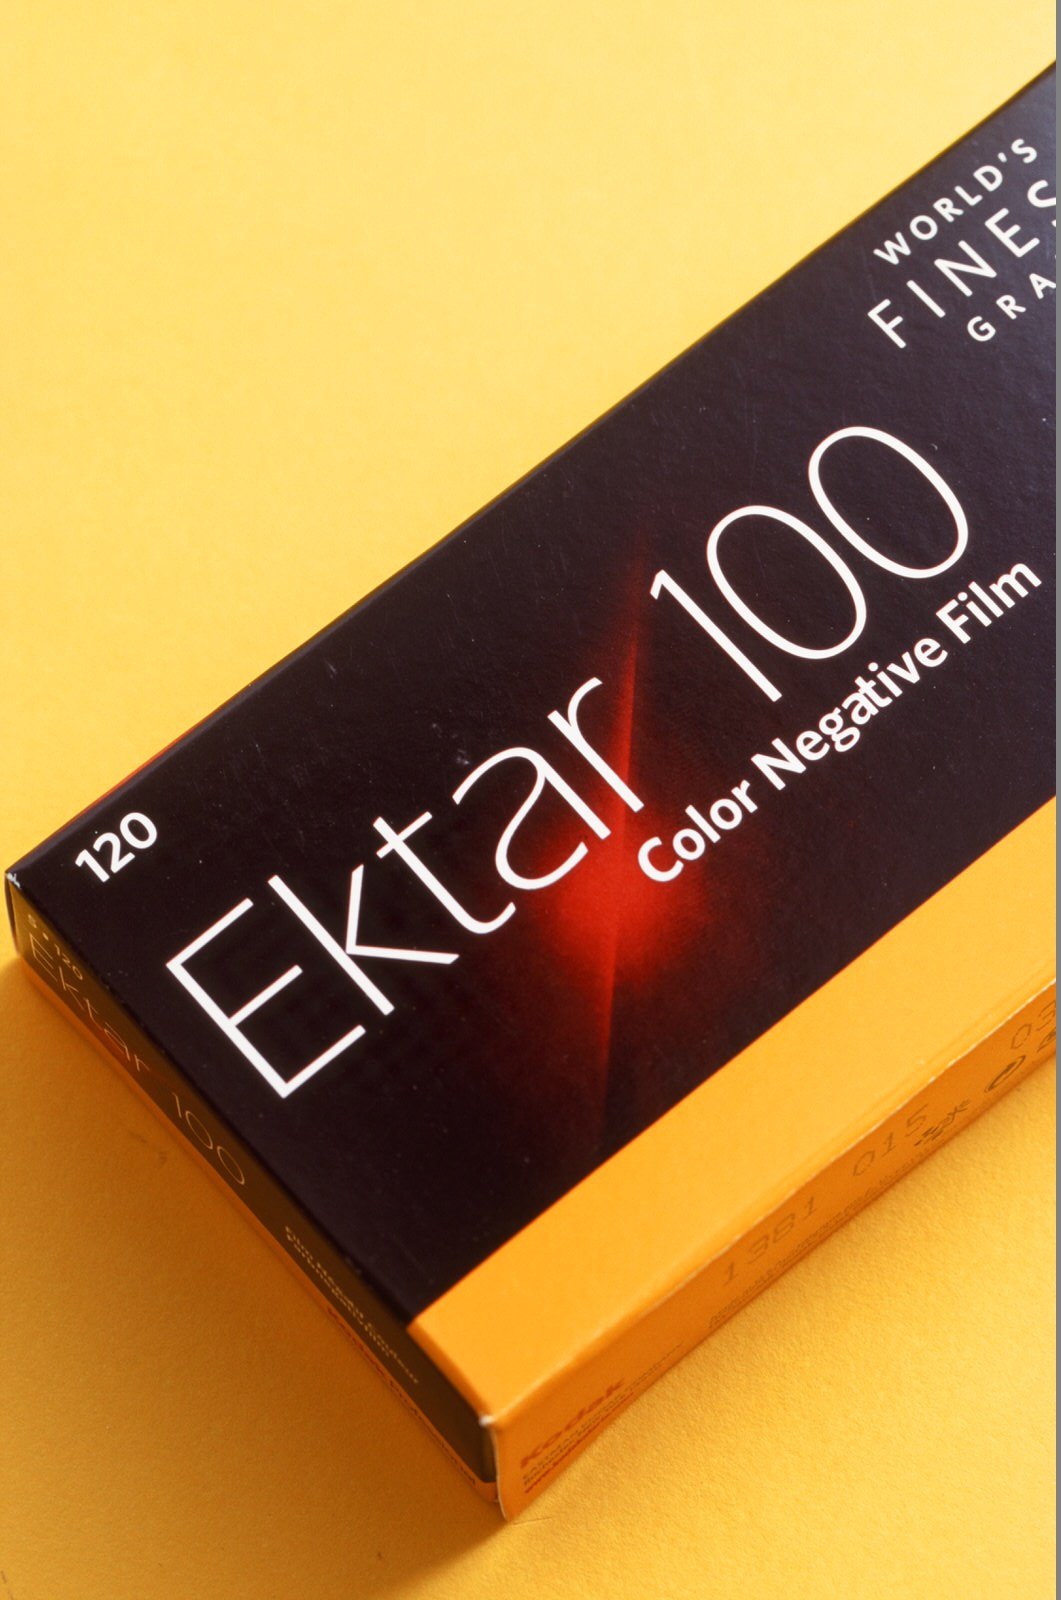 120 Film